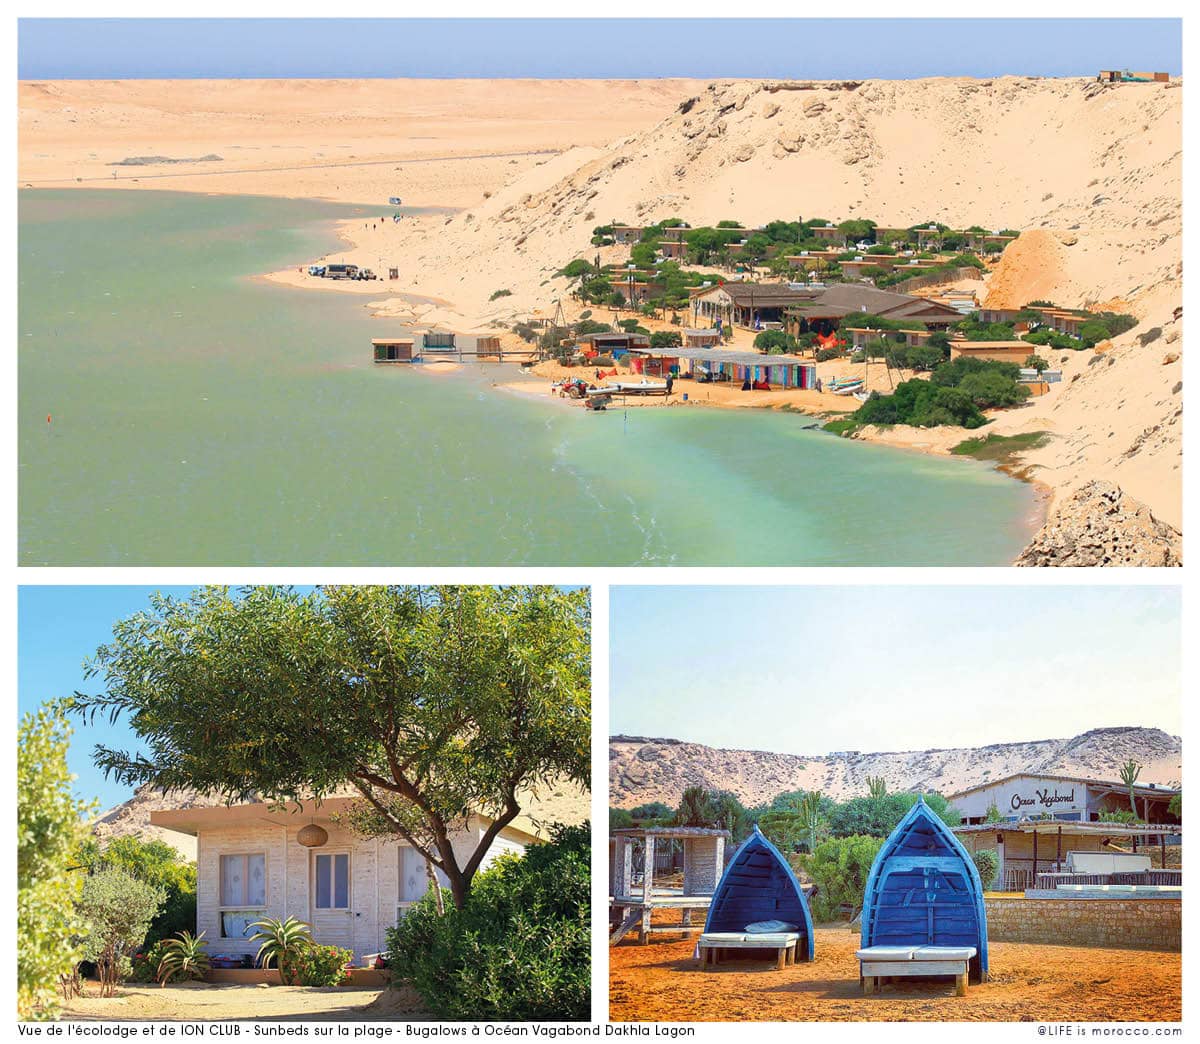 LIFE15-Dakhla-Vue-de-lecolodge-et-de-ION-CLUB-Sunbeds-sur-la-plage-Bugalows-Ocean-Vagabond-Dakhla-Lagon-@LIFE-is-morocco